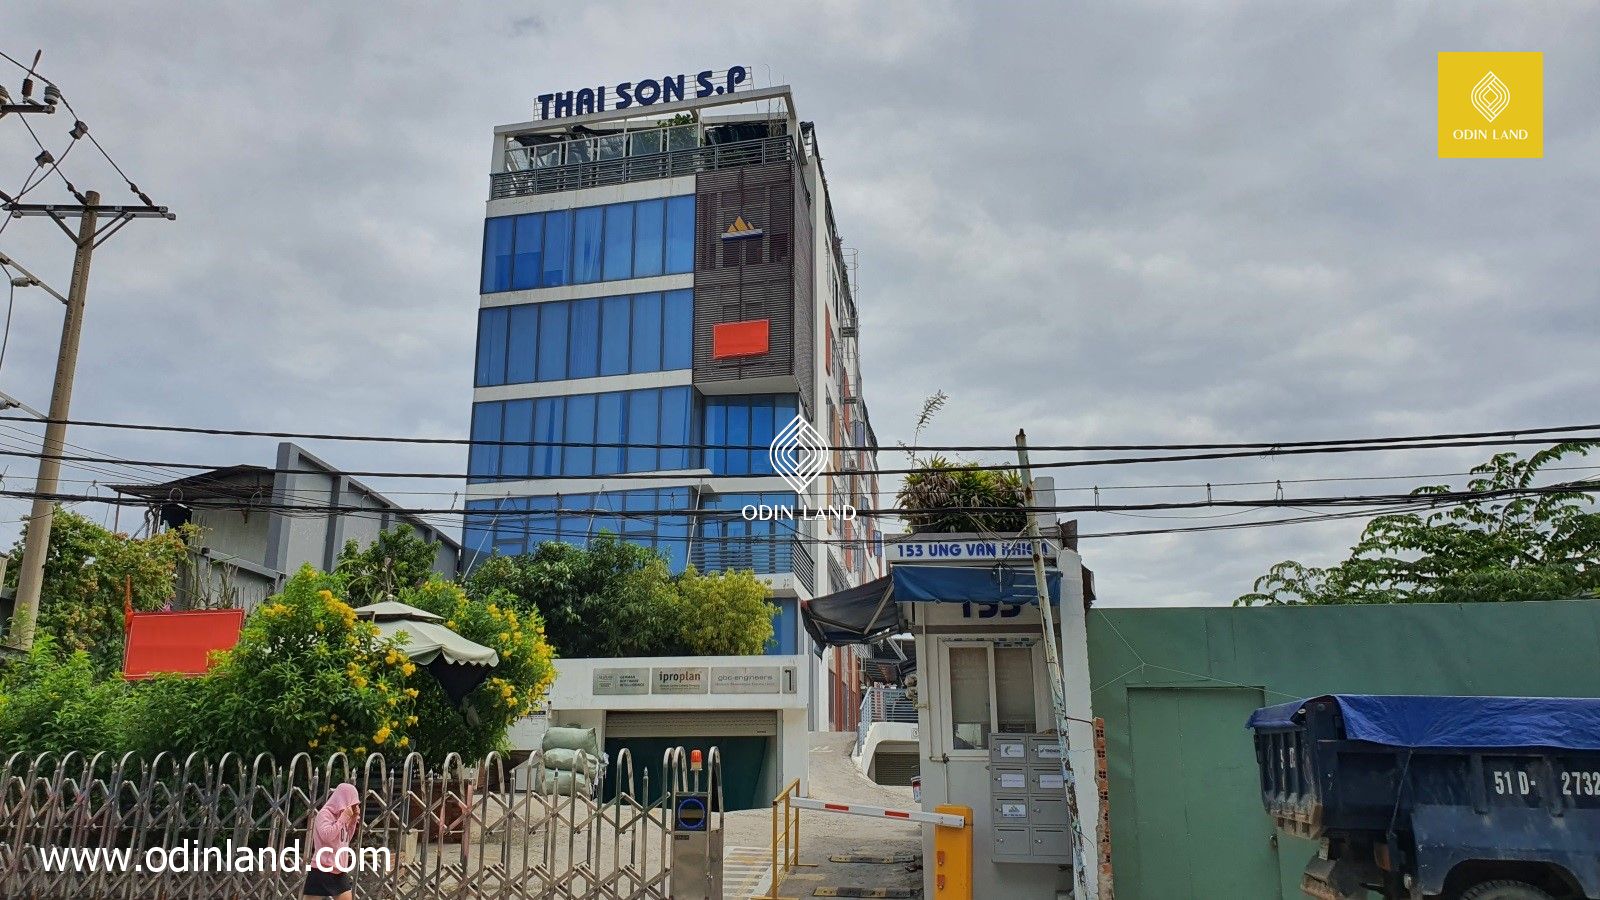 Van Phong Cho Thue Toa Nha Thai Son S.p Building 1